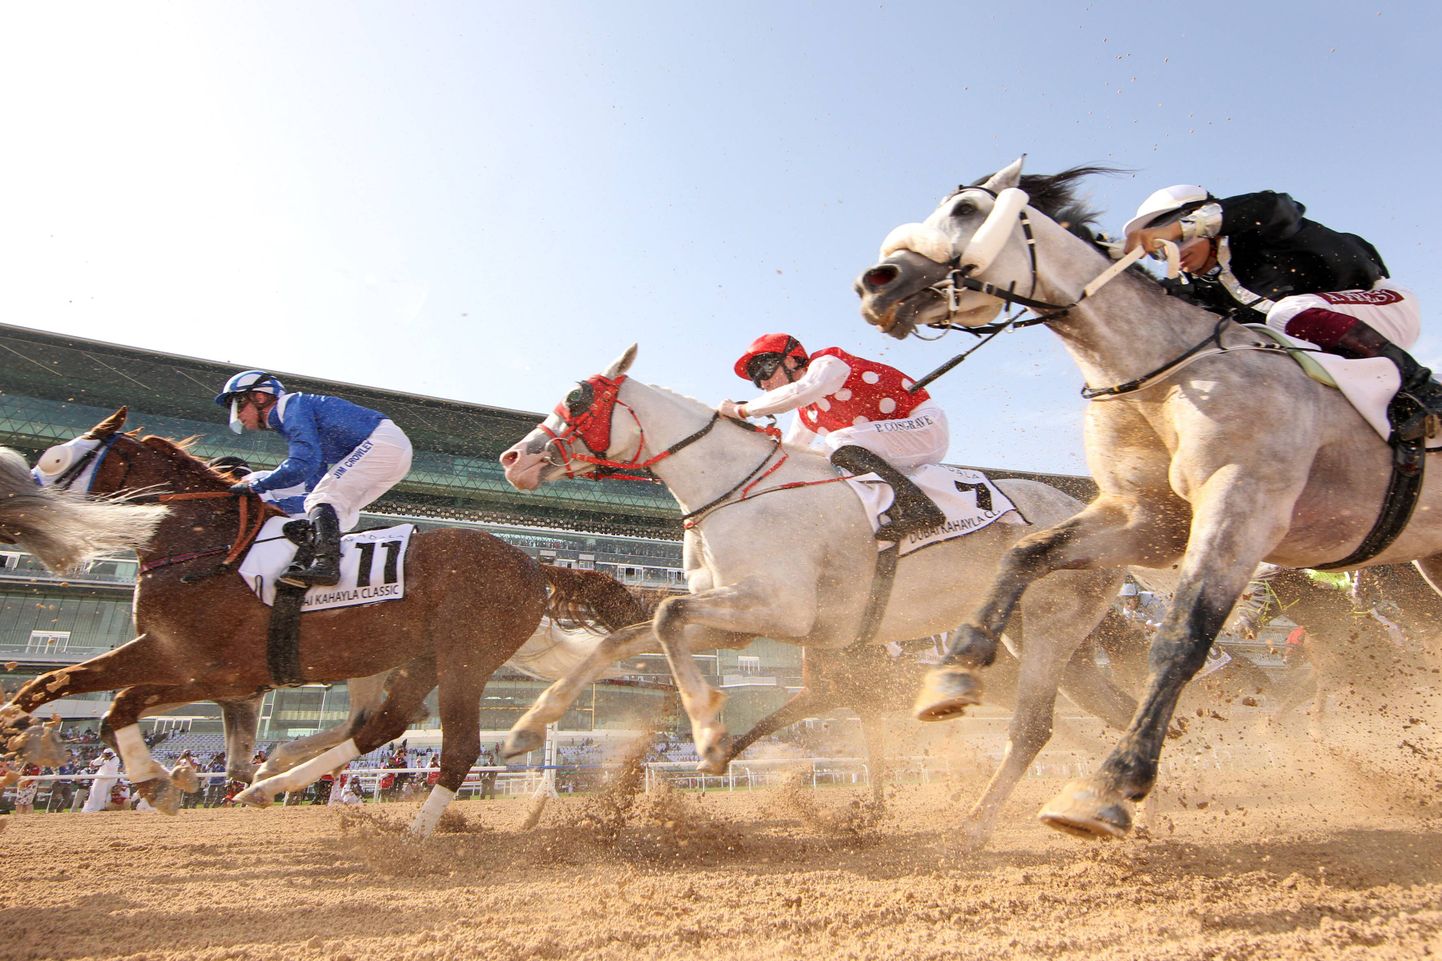 Raharohkemad ratsavõistlused toimuvad naftariikides. Foto on tehtud mulluselt Dubai ratsavõisltuselt.